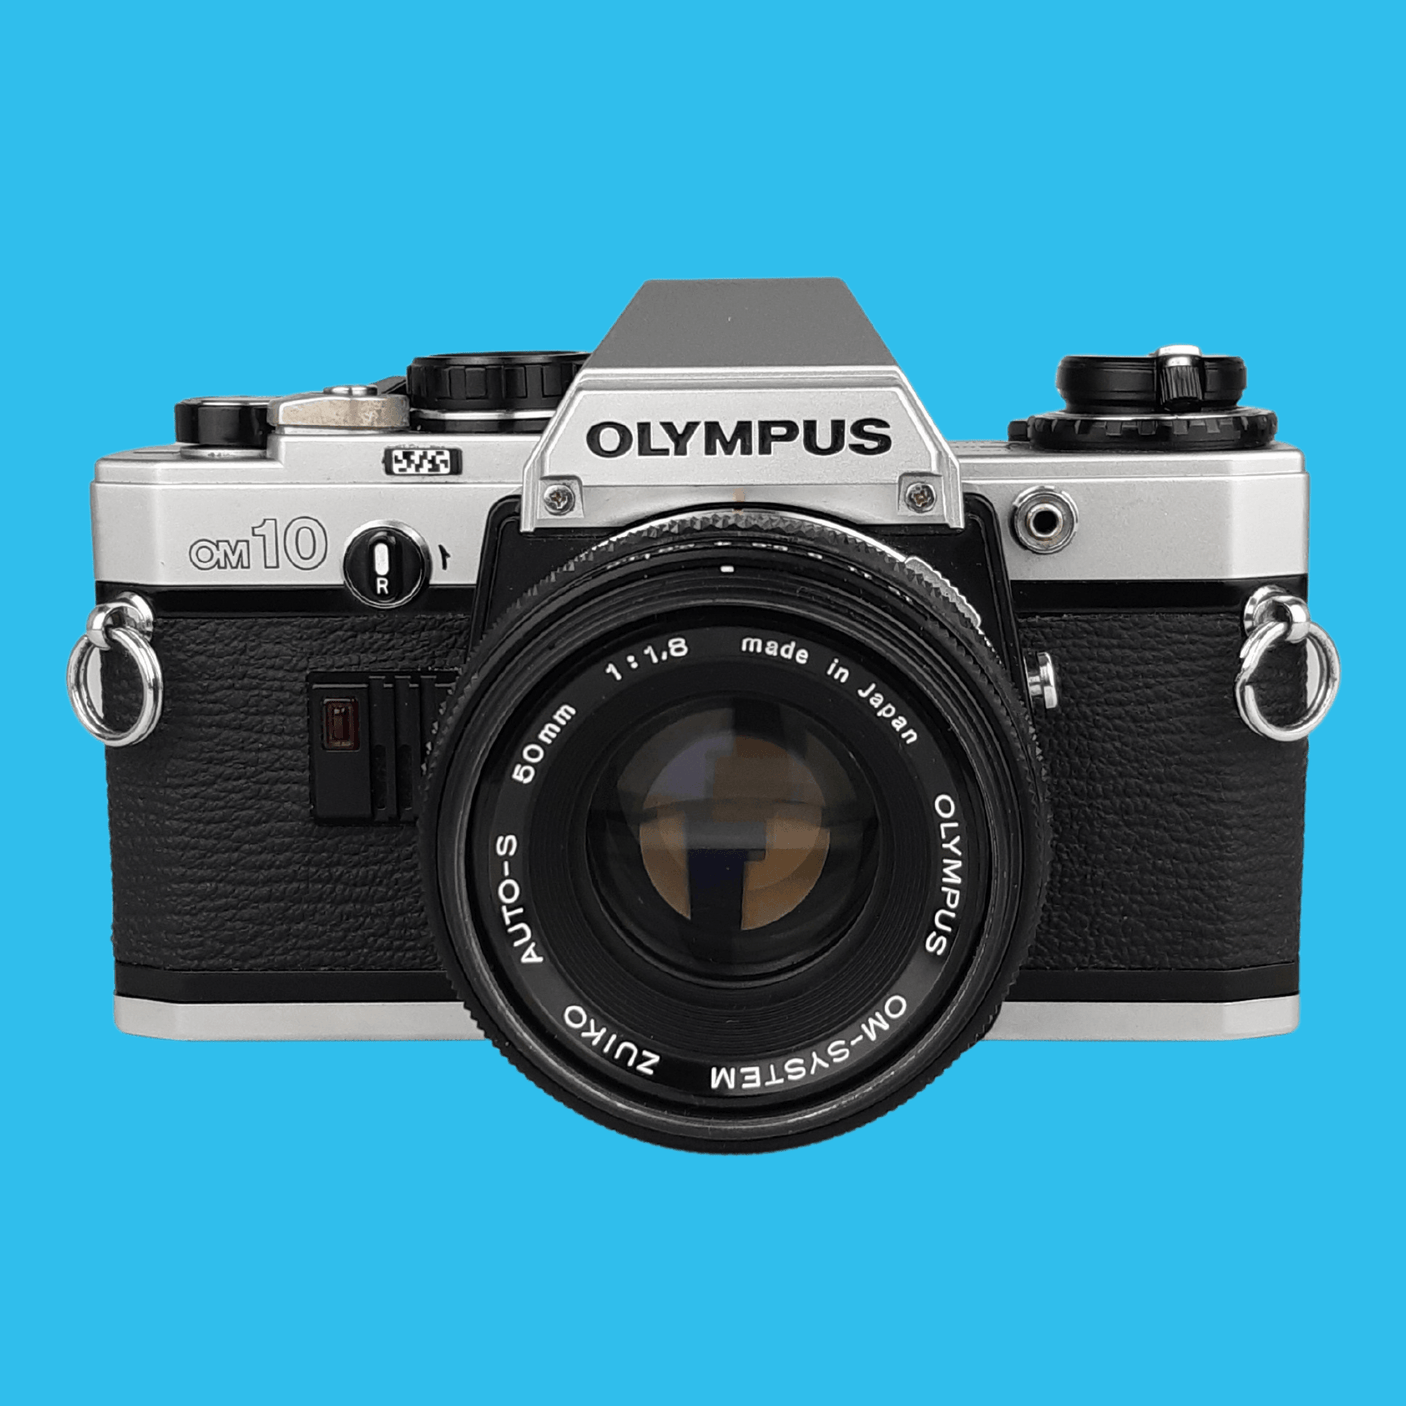 Olympus OM10 Vintage SLR 35mm Film Camera with f/1.8 50mm Prime Lens